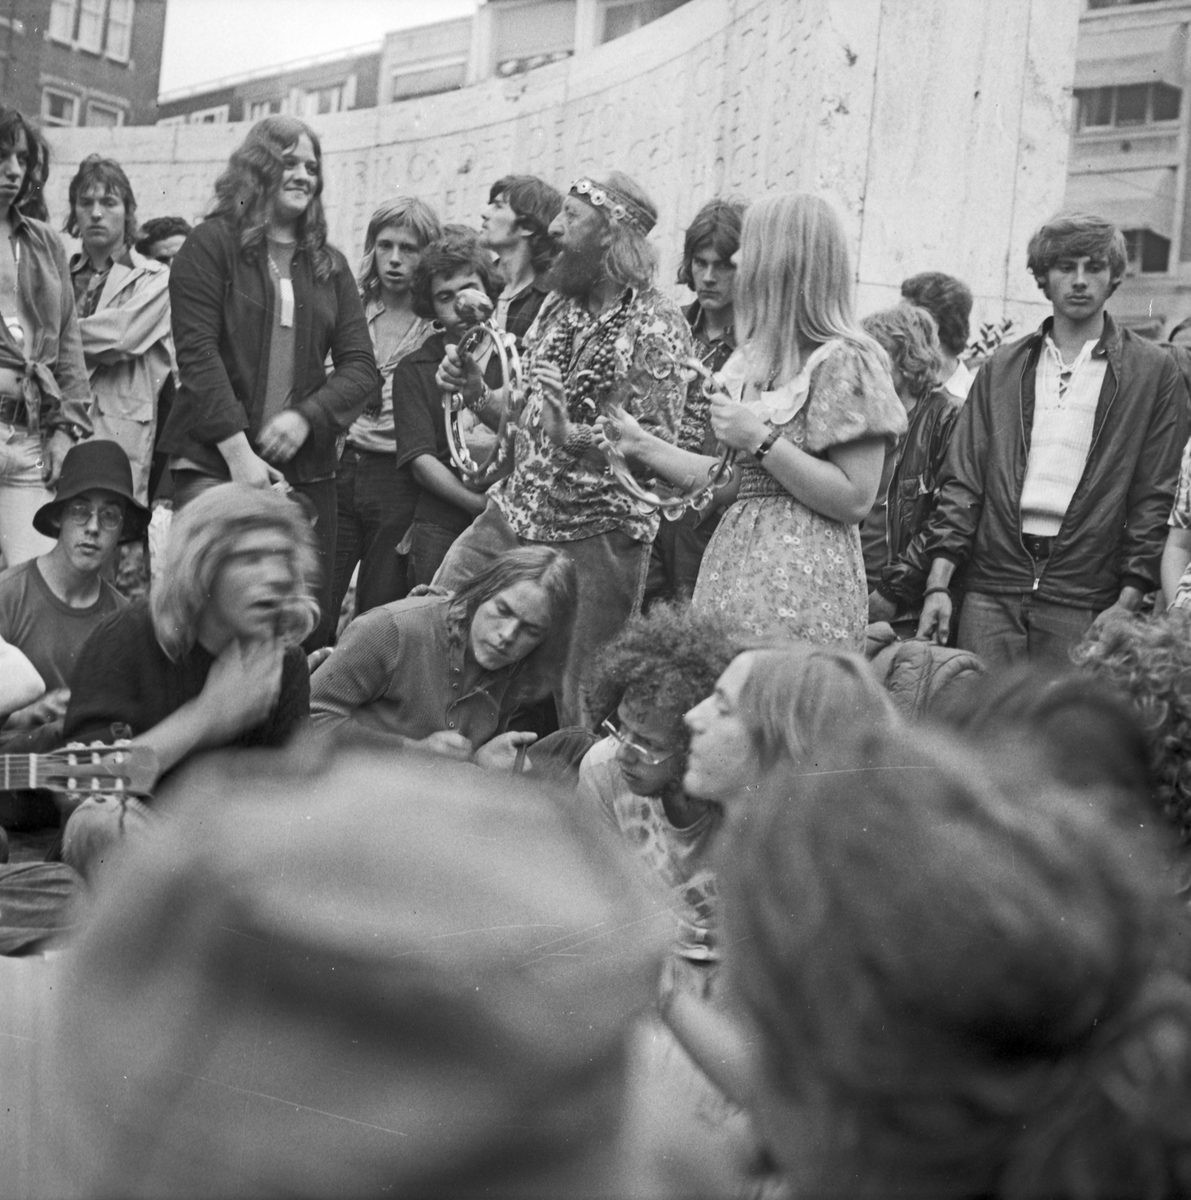 En gjeng som er samlet og spiller og synger på en åpen plass i sentrum av en by. Muligens Amsterdam.